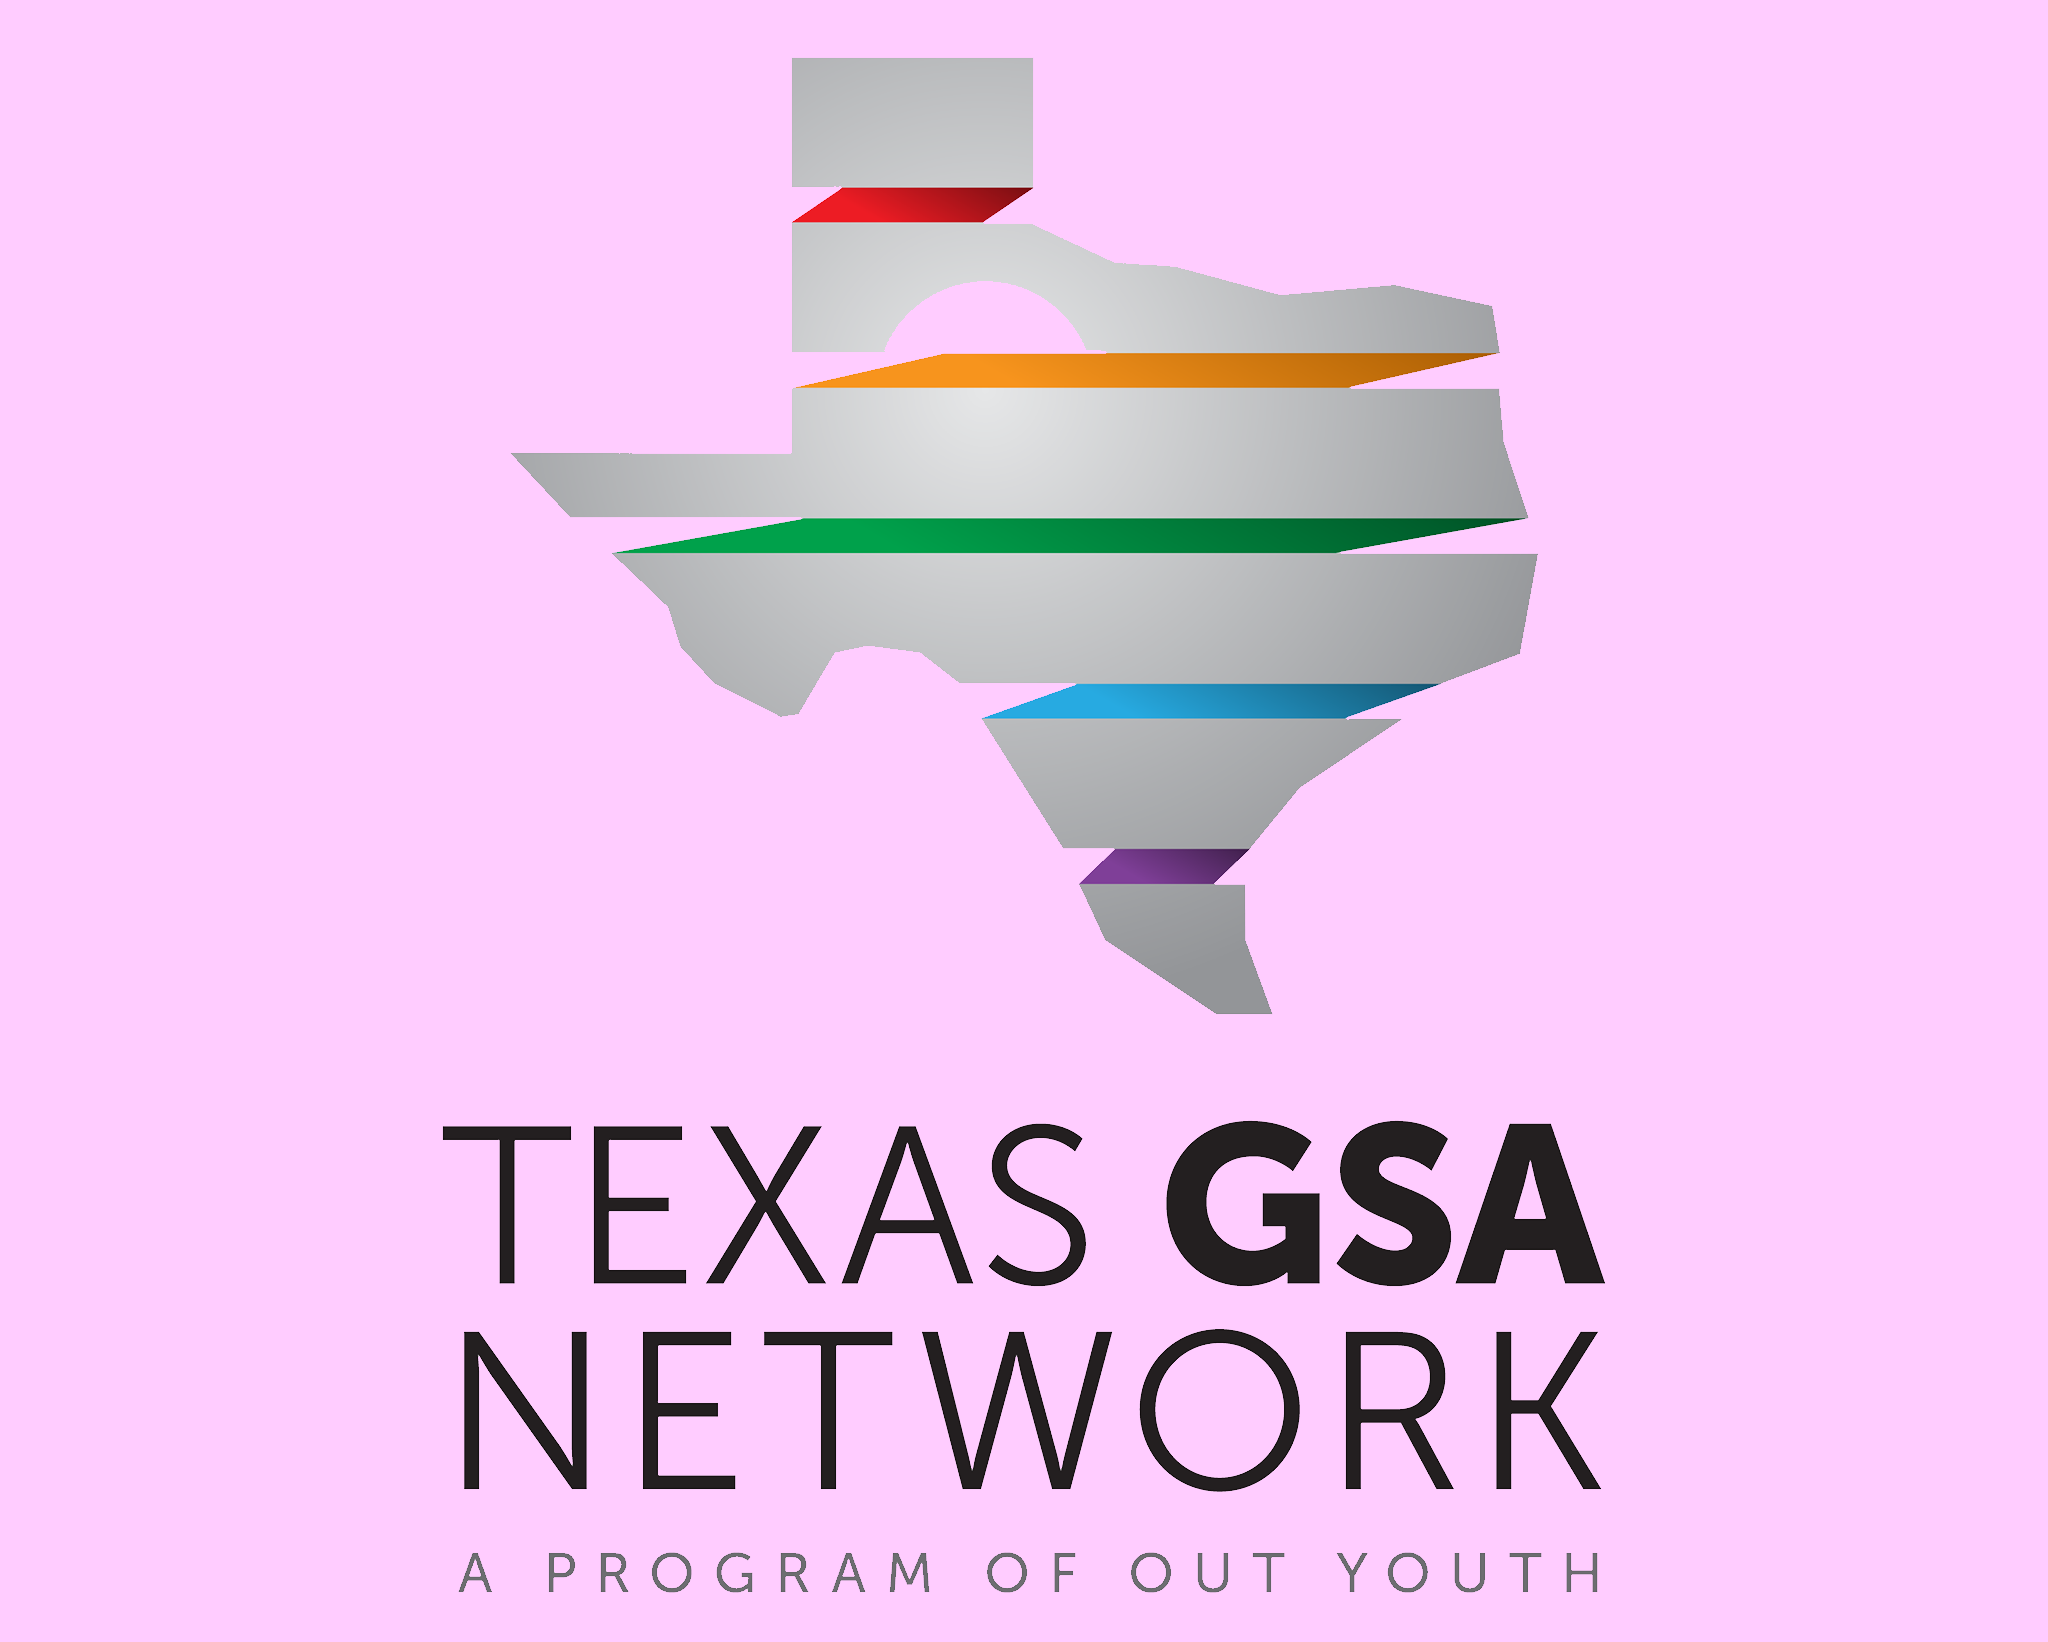 Texas GSA Network